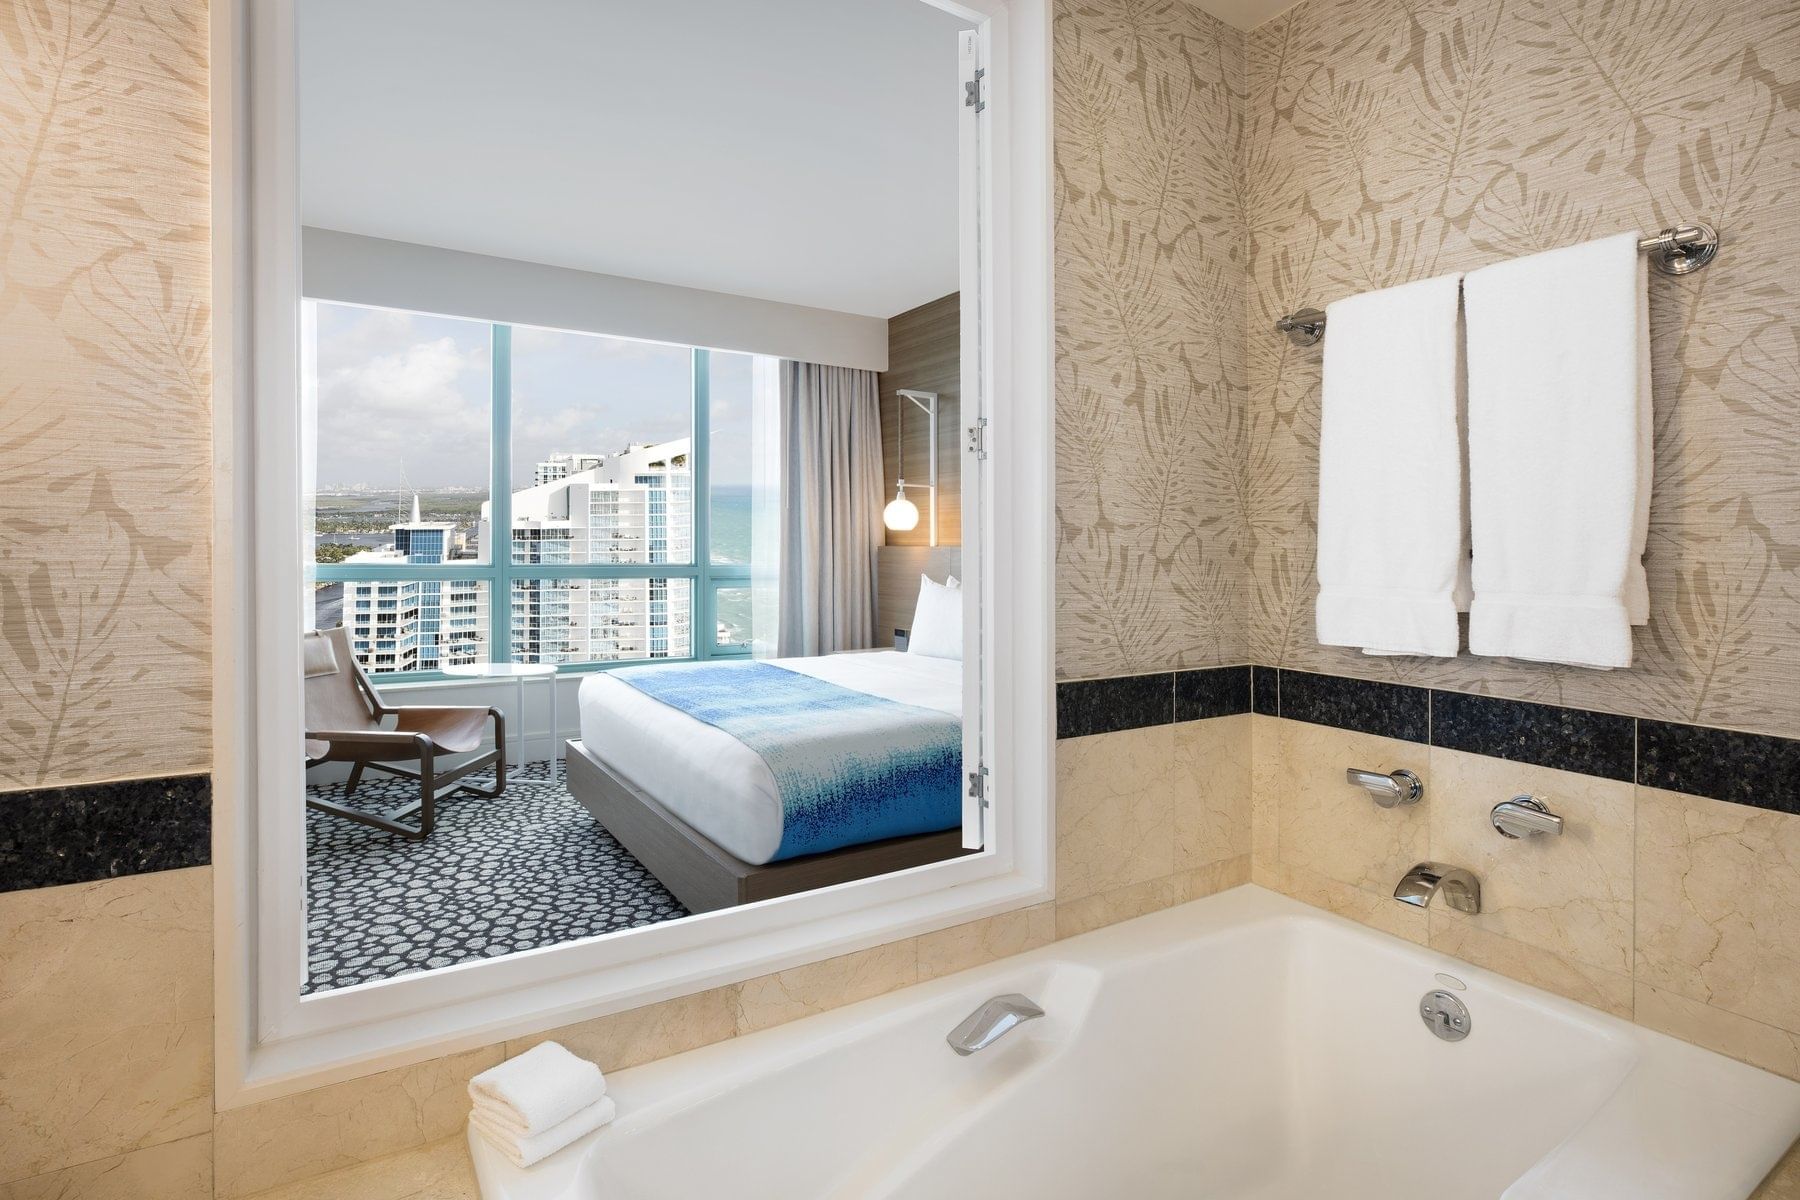 Diplomat Suite full bathroom with a tub at Diplomat Resort 